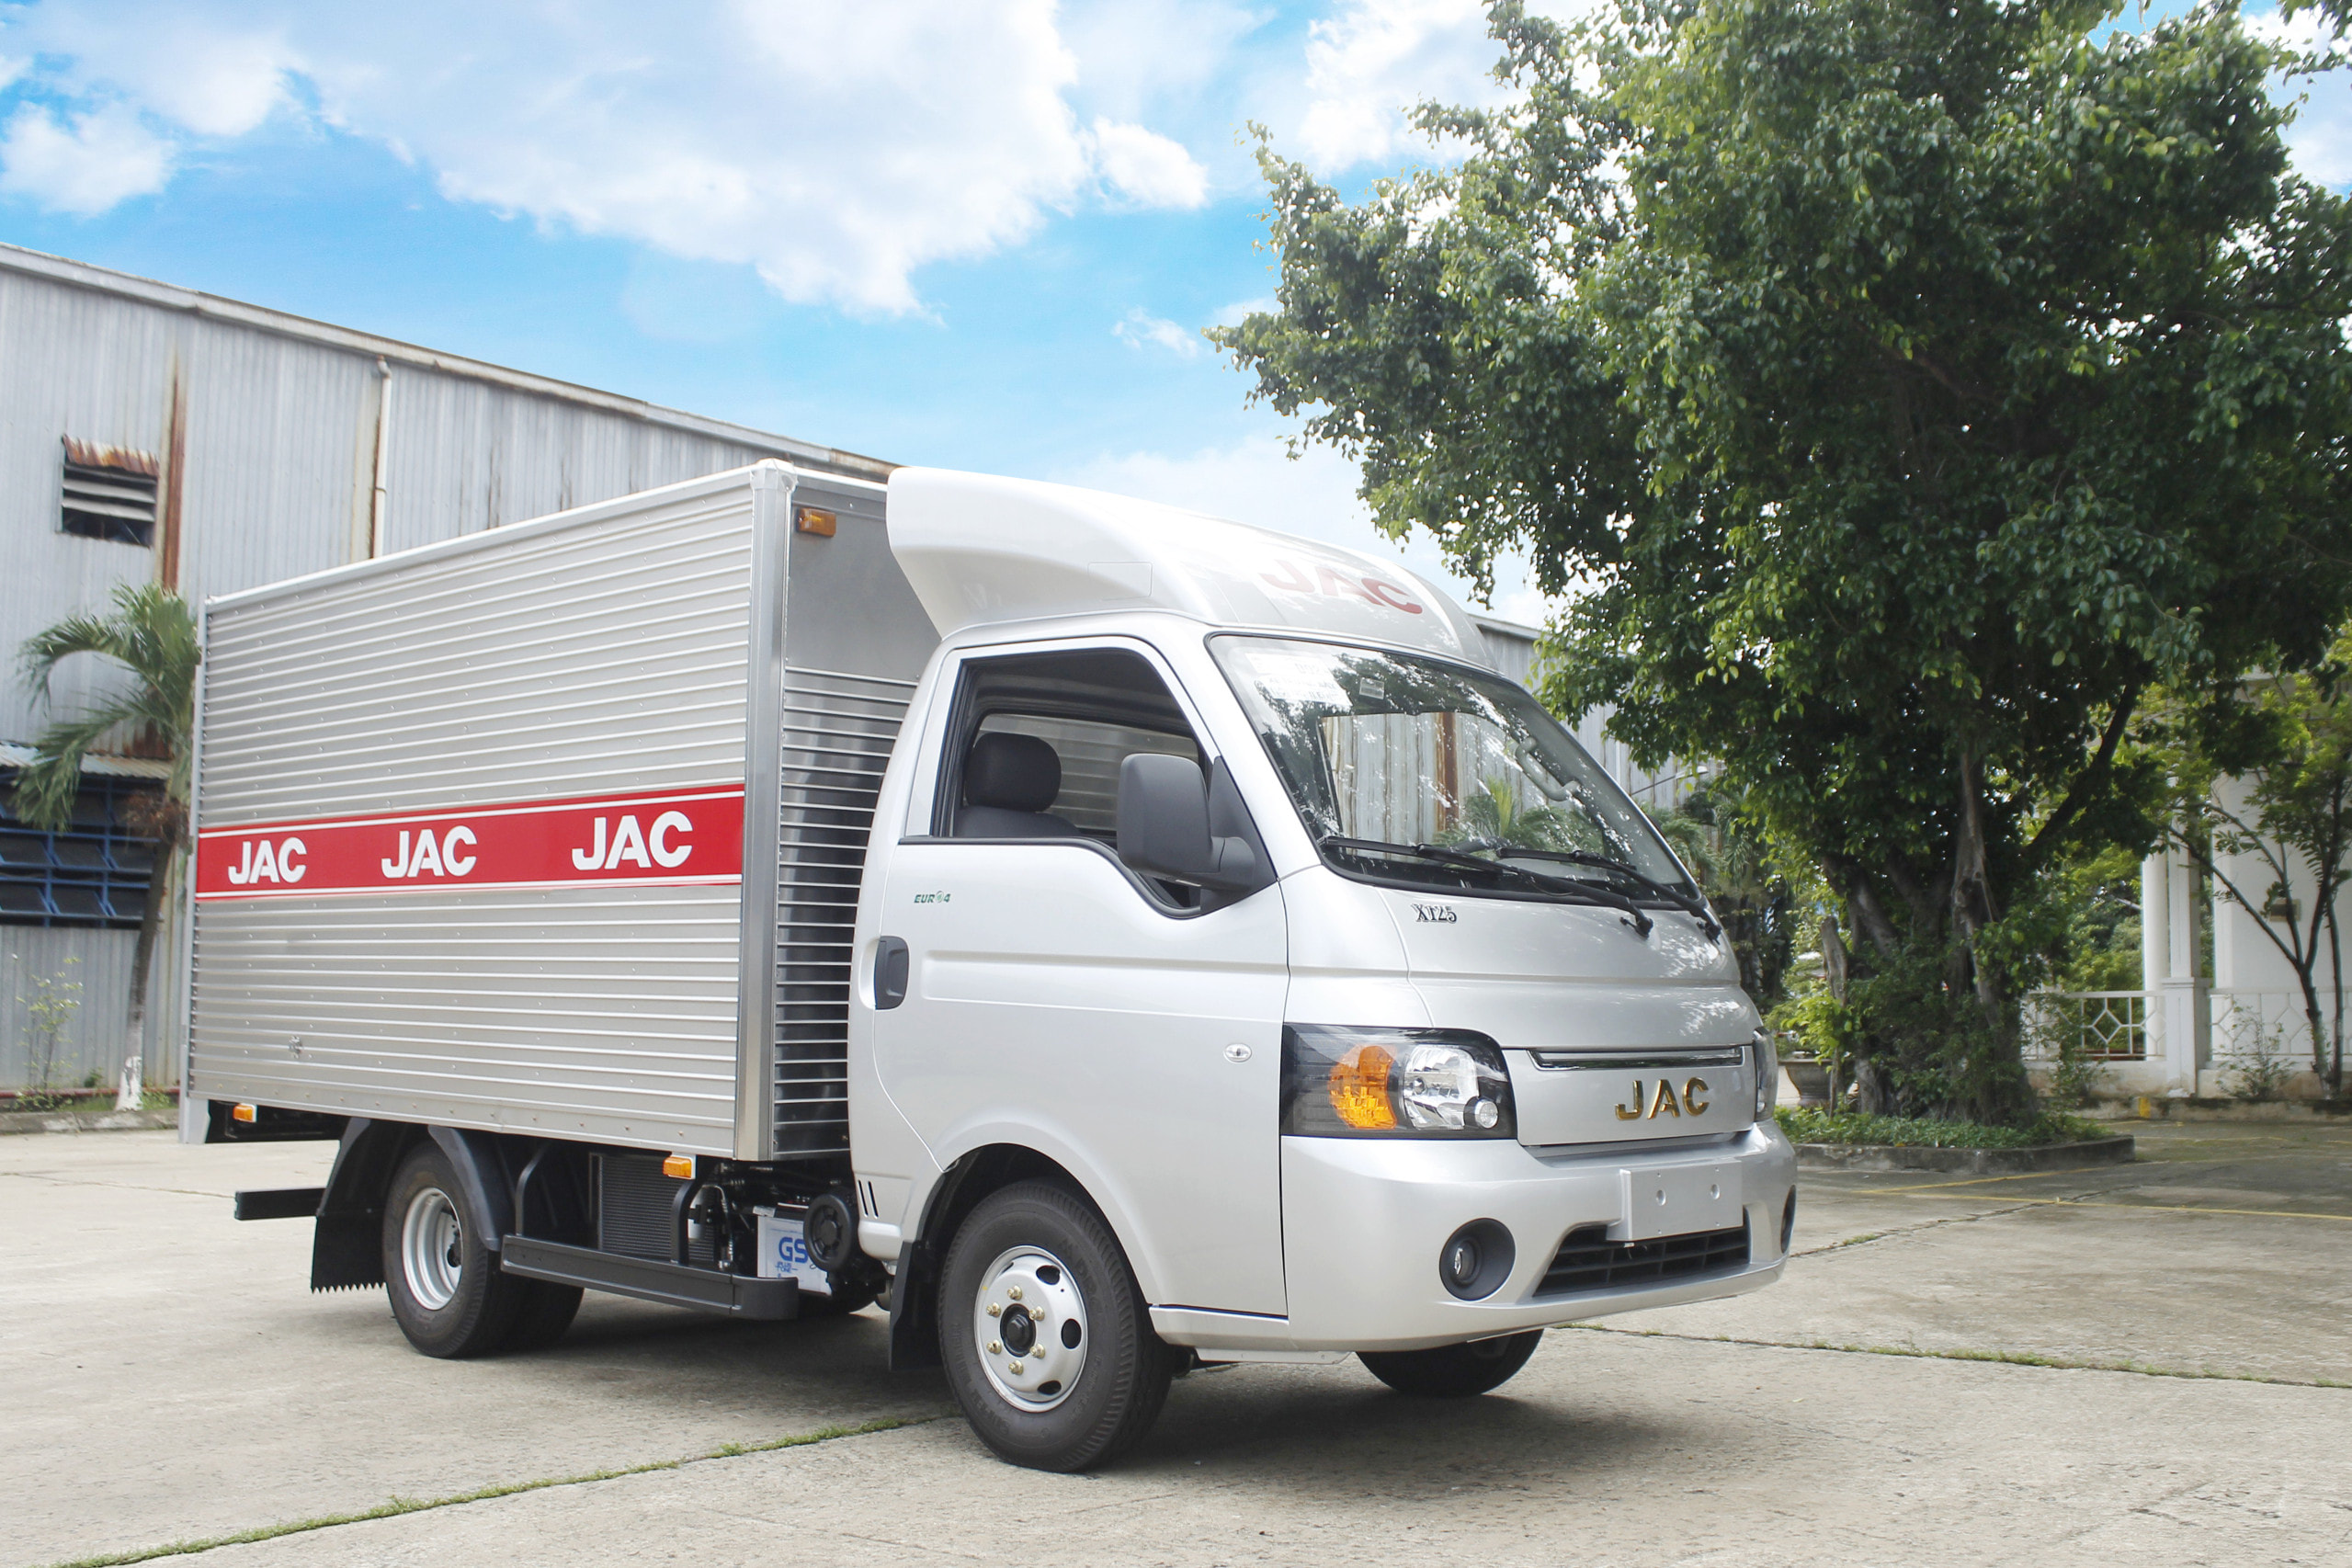 Bán xe tải Jac X125 1t25 thiết kế tiêu chuẩn Châu Âu giá rẻ